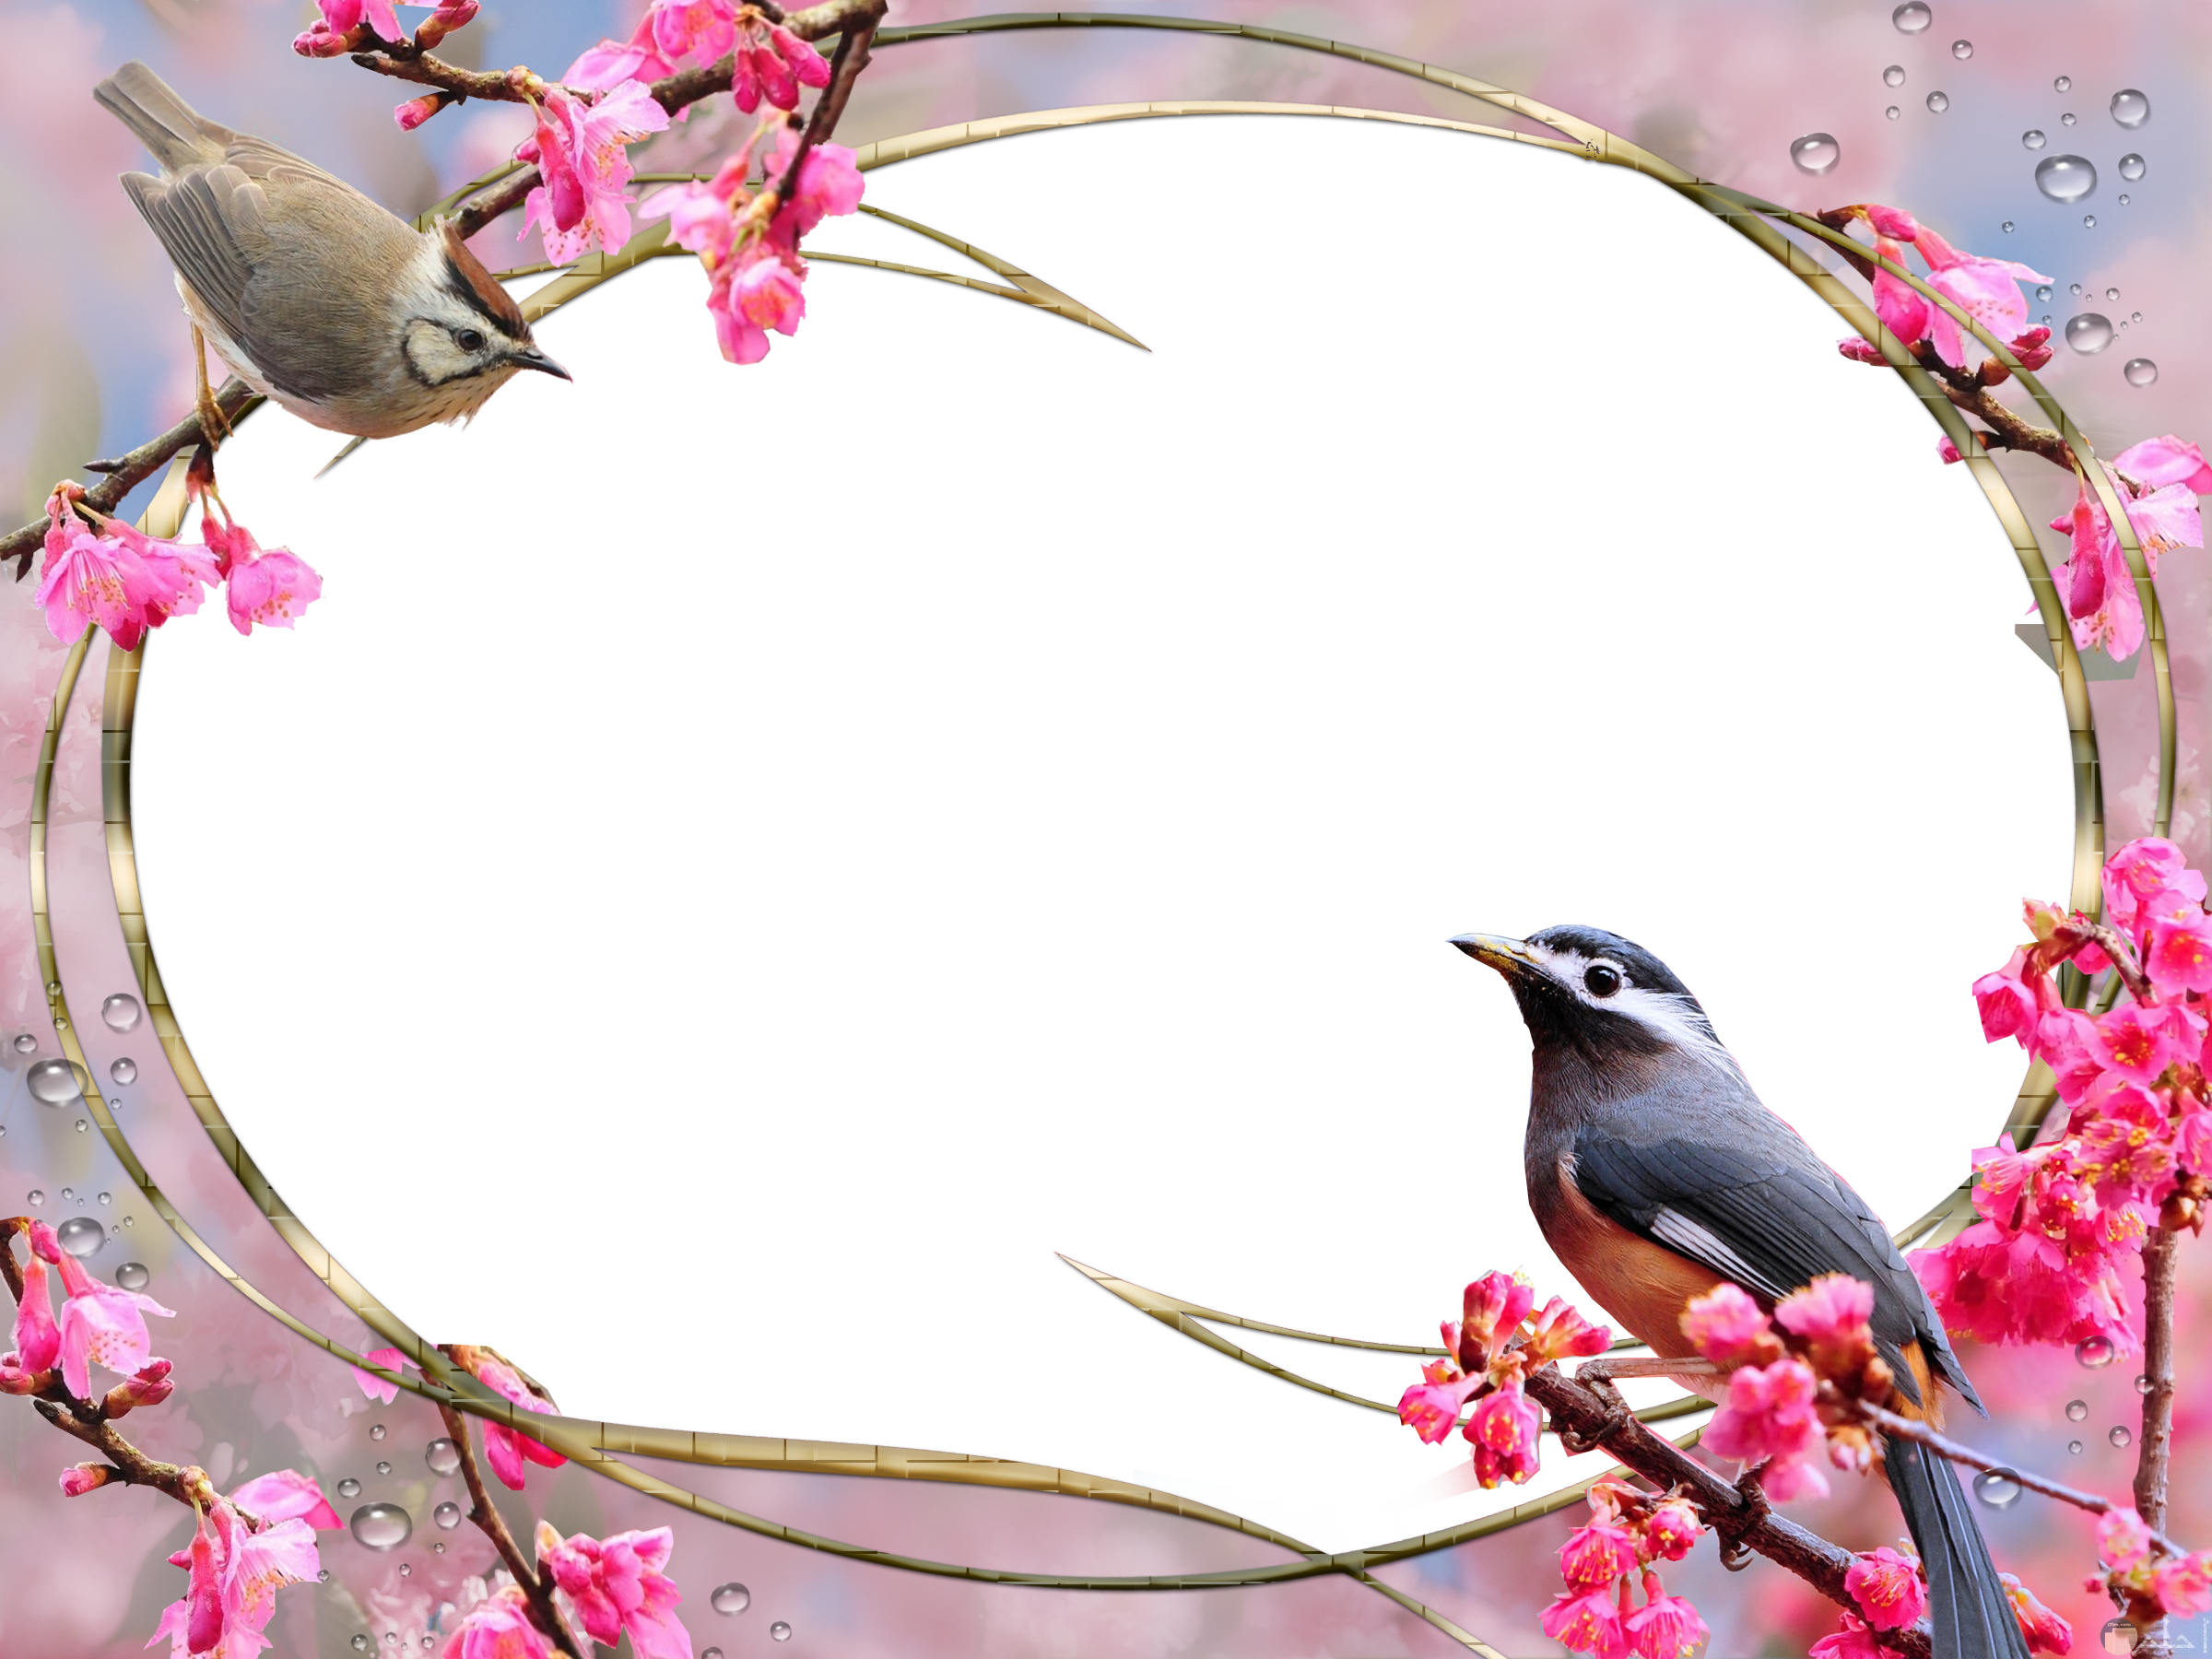 اطار صورة مزين بالعصافير و الورد.